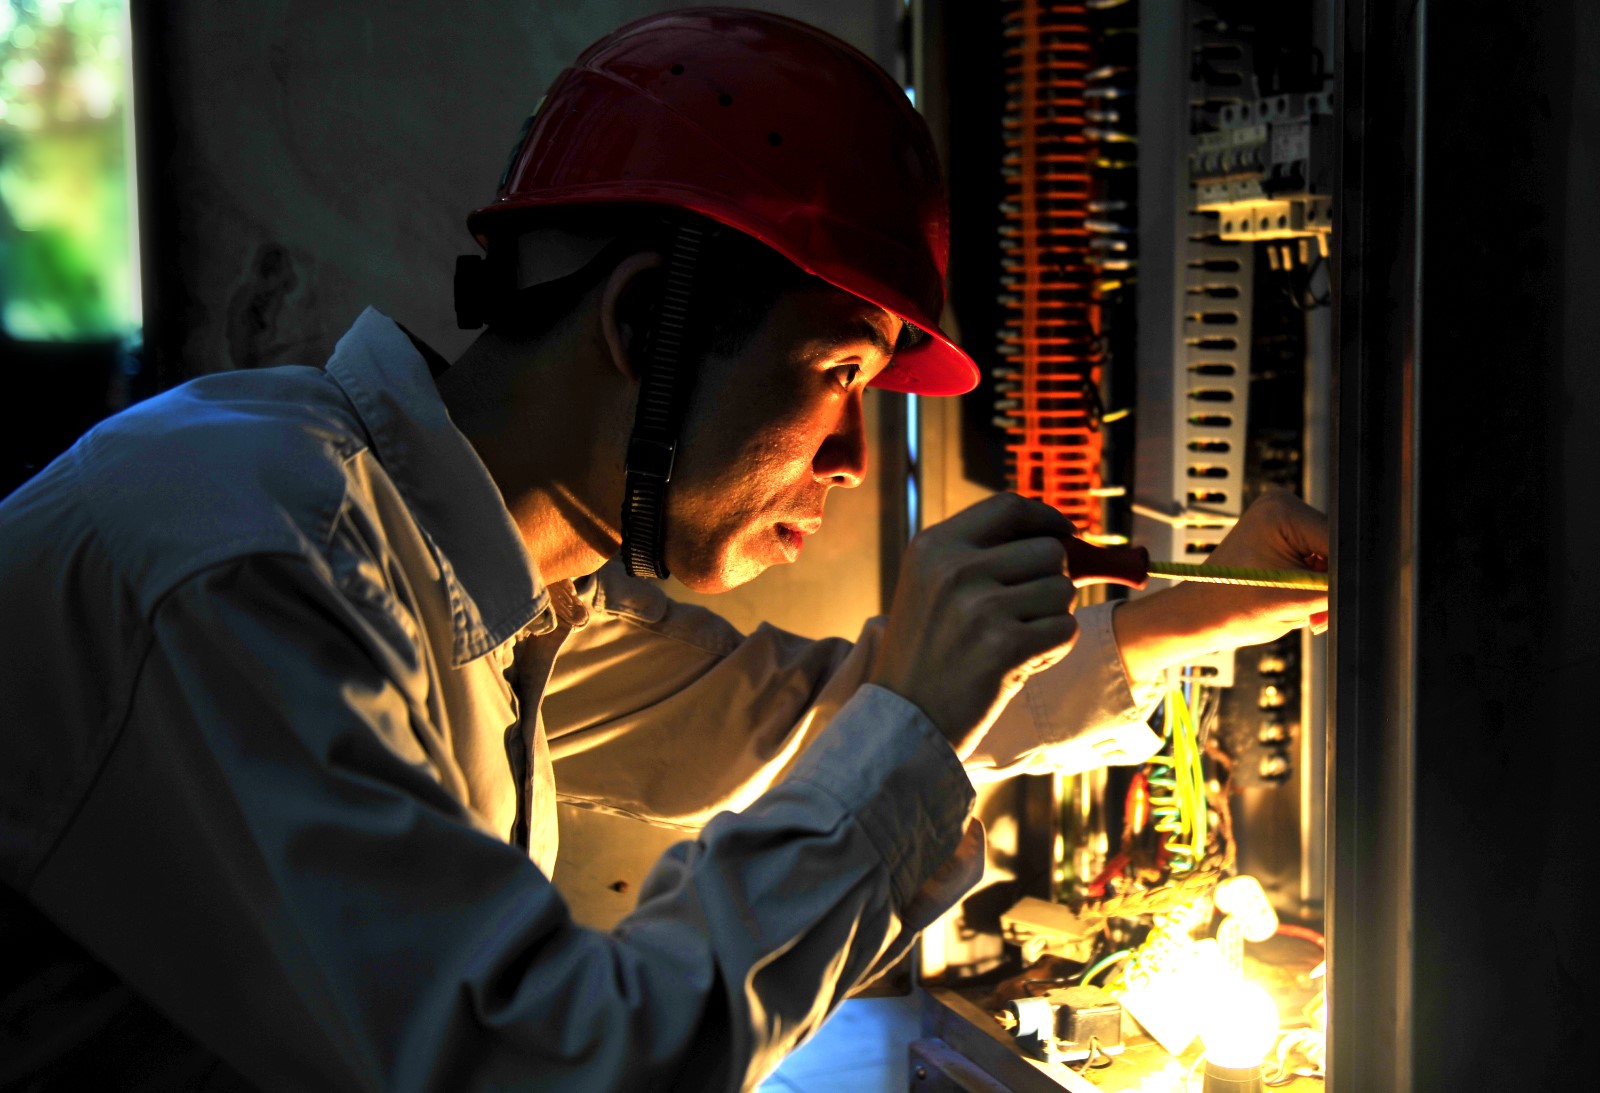 国网长沙变电检修公司二次检修一班副班长常学武正在检修电力设备。